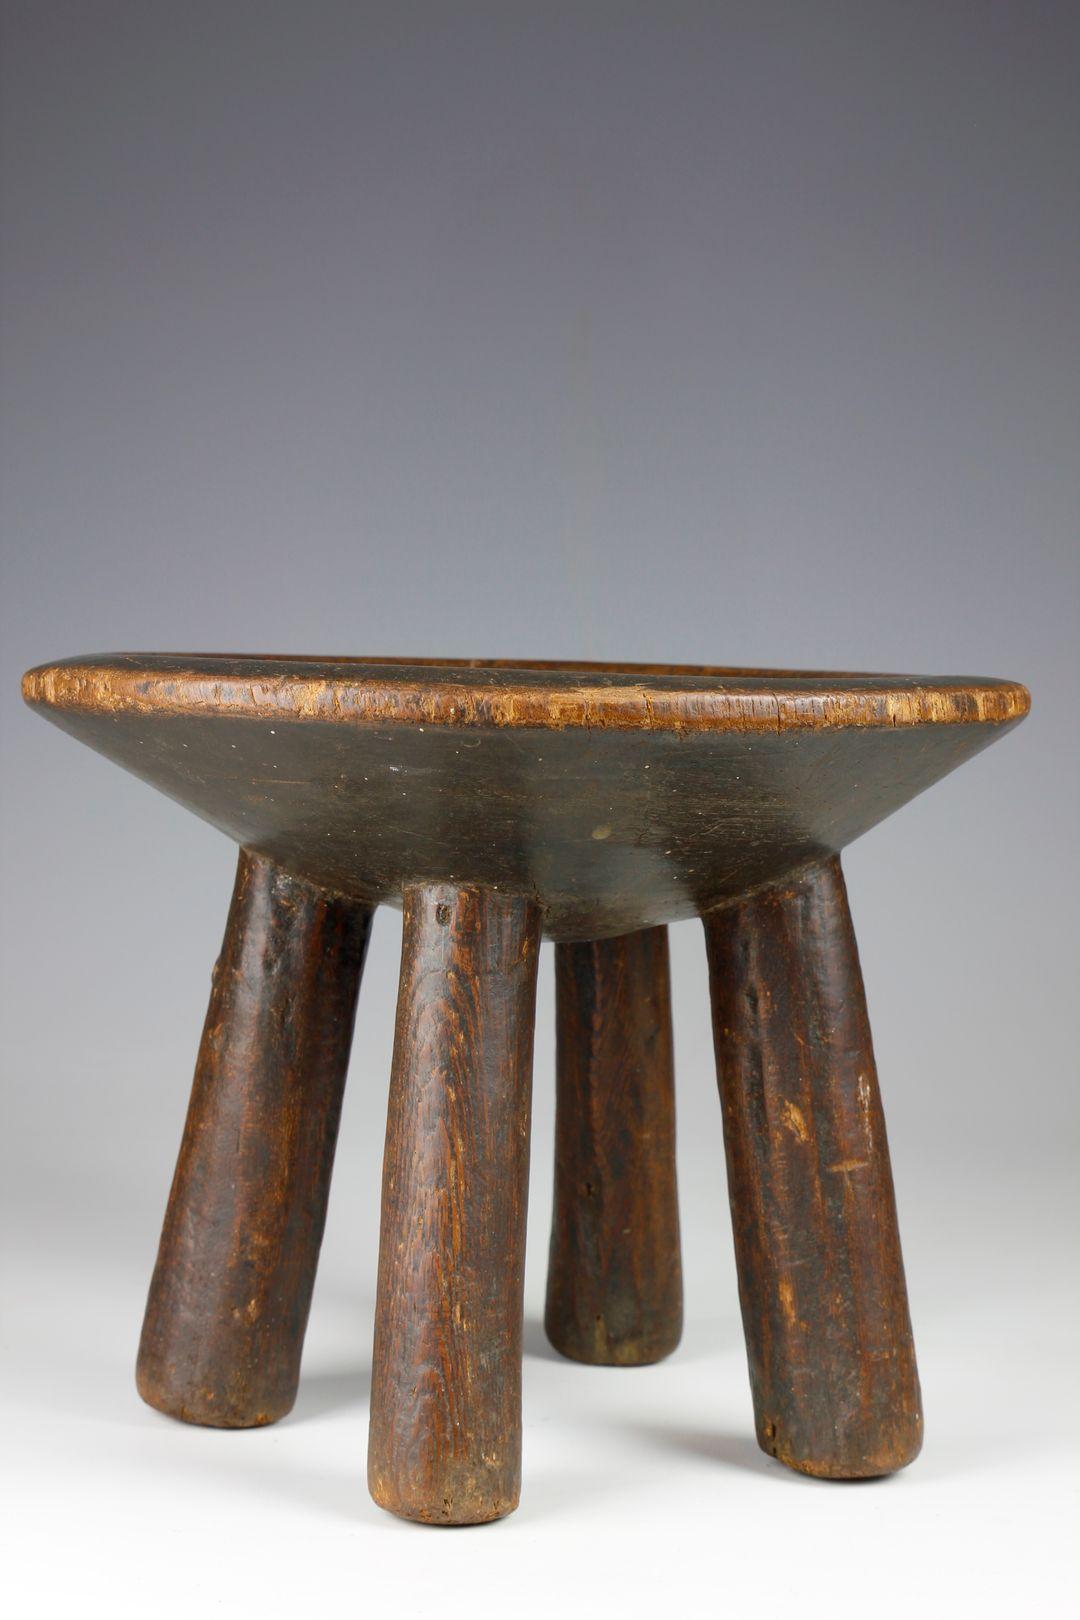 Die Form dieses fein geschnitzten Dorfhockers aus dem frühen 20. Jahrhundert aus der Hehe-Kultur in Tansania besteht aus vier kurzen, aufrechten Beinen, die eine schalenförmige Sitzfläche tragen. Ein kleiner dekorativer Metallknopf ziert eines der